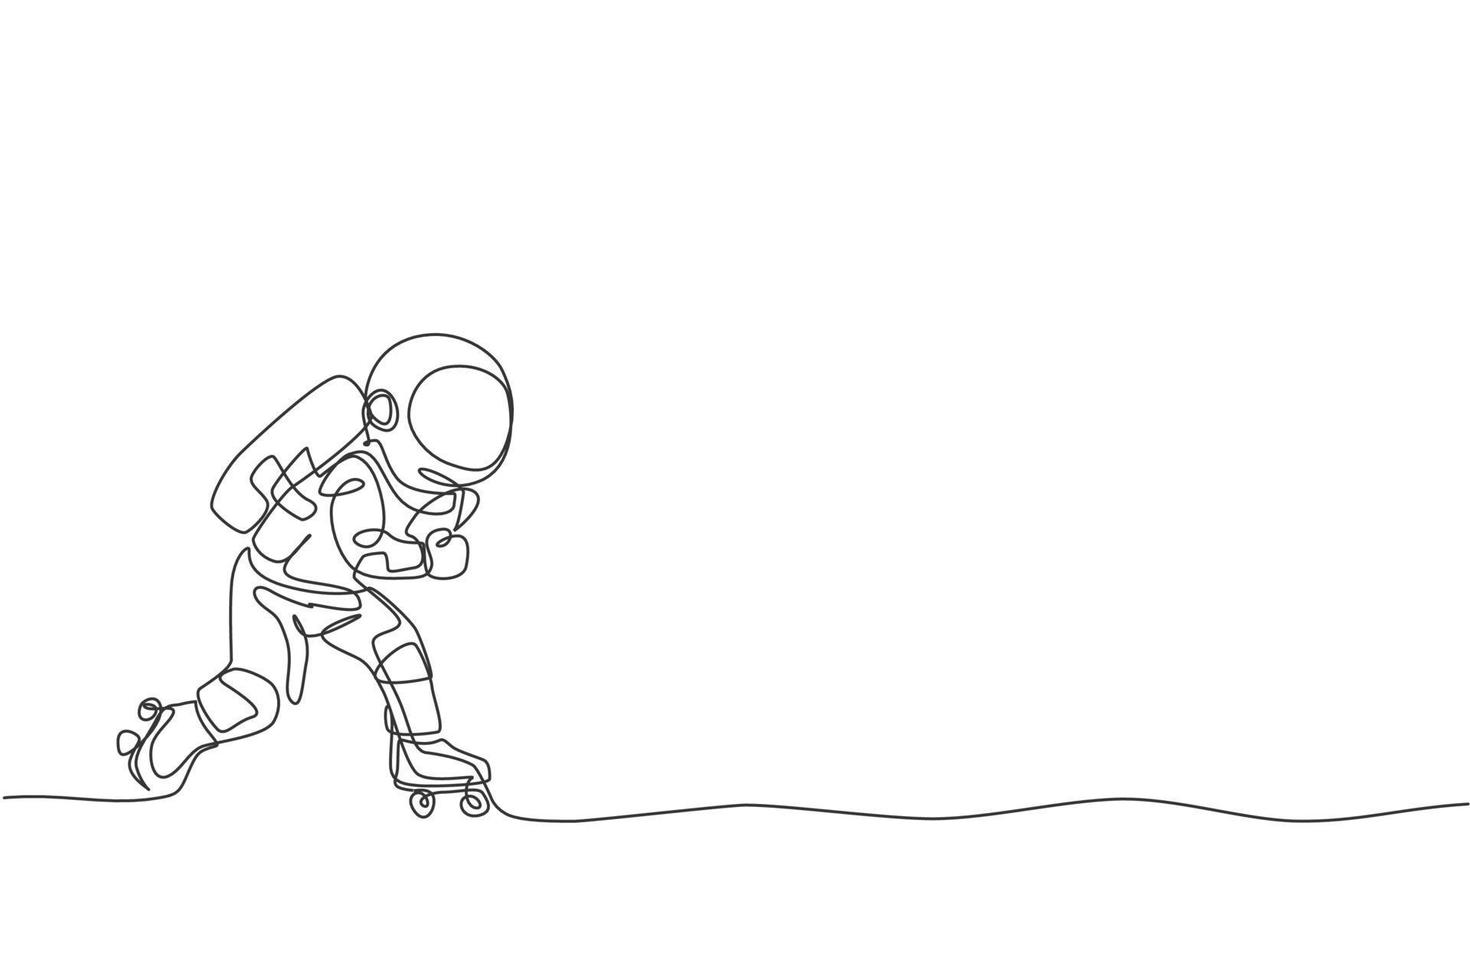 een doorlopende lijntekening van astronaut met rolschaatsen op het maanoppervlak, deep space galaxy. ruimtevaarder gezond fitness sportconcept. dynamische enkele lijn tekenen ontwerp vector grafische afbeelding